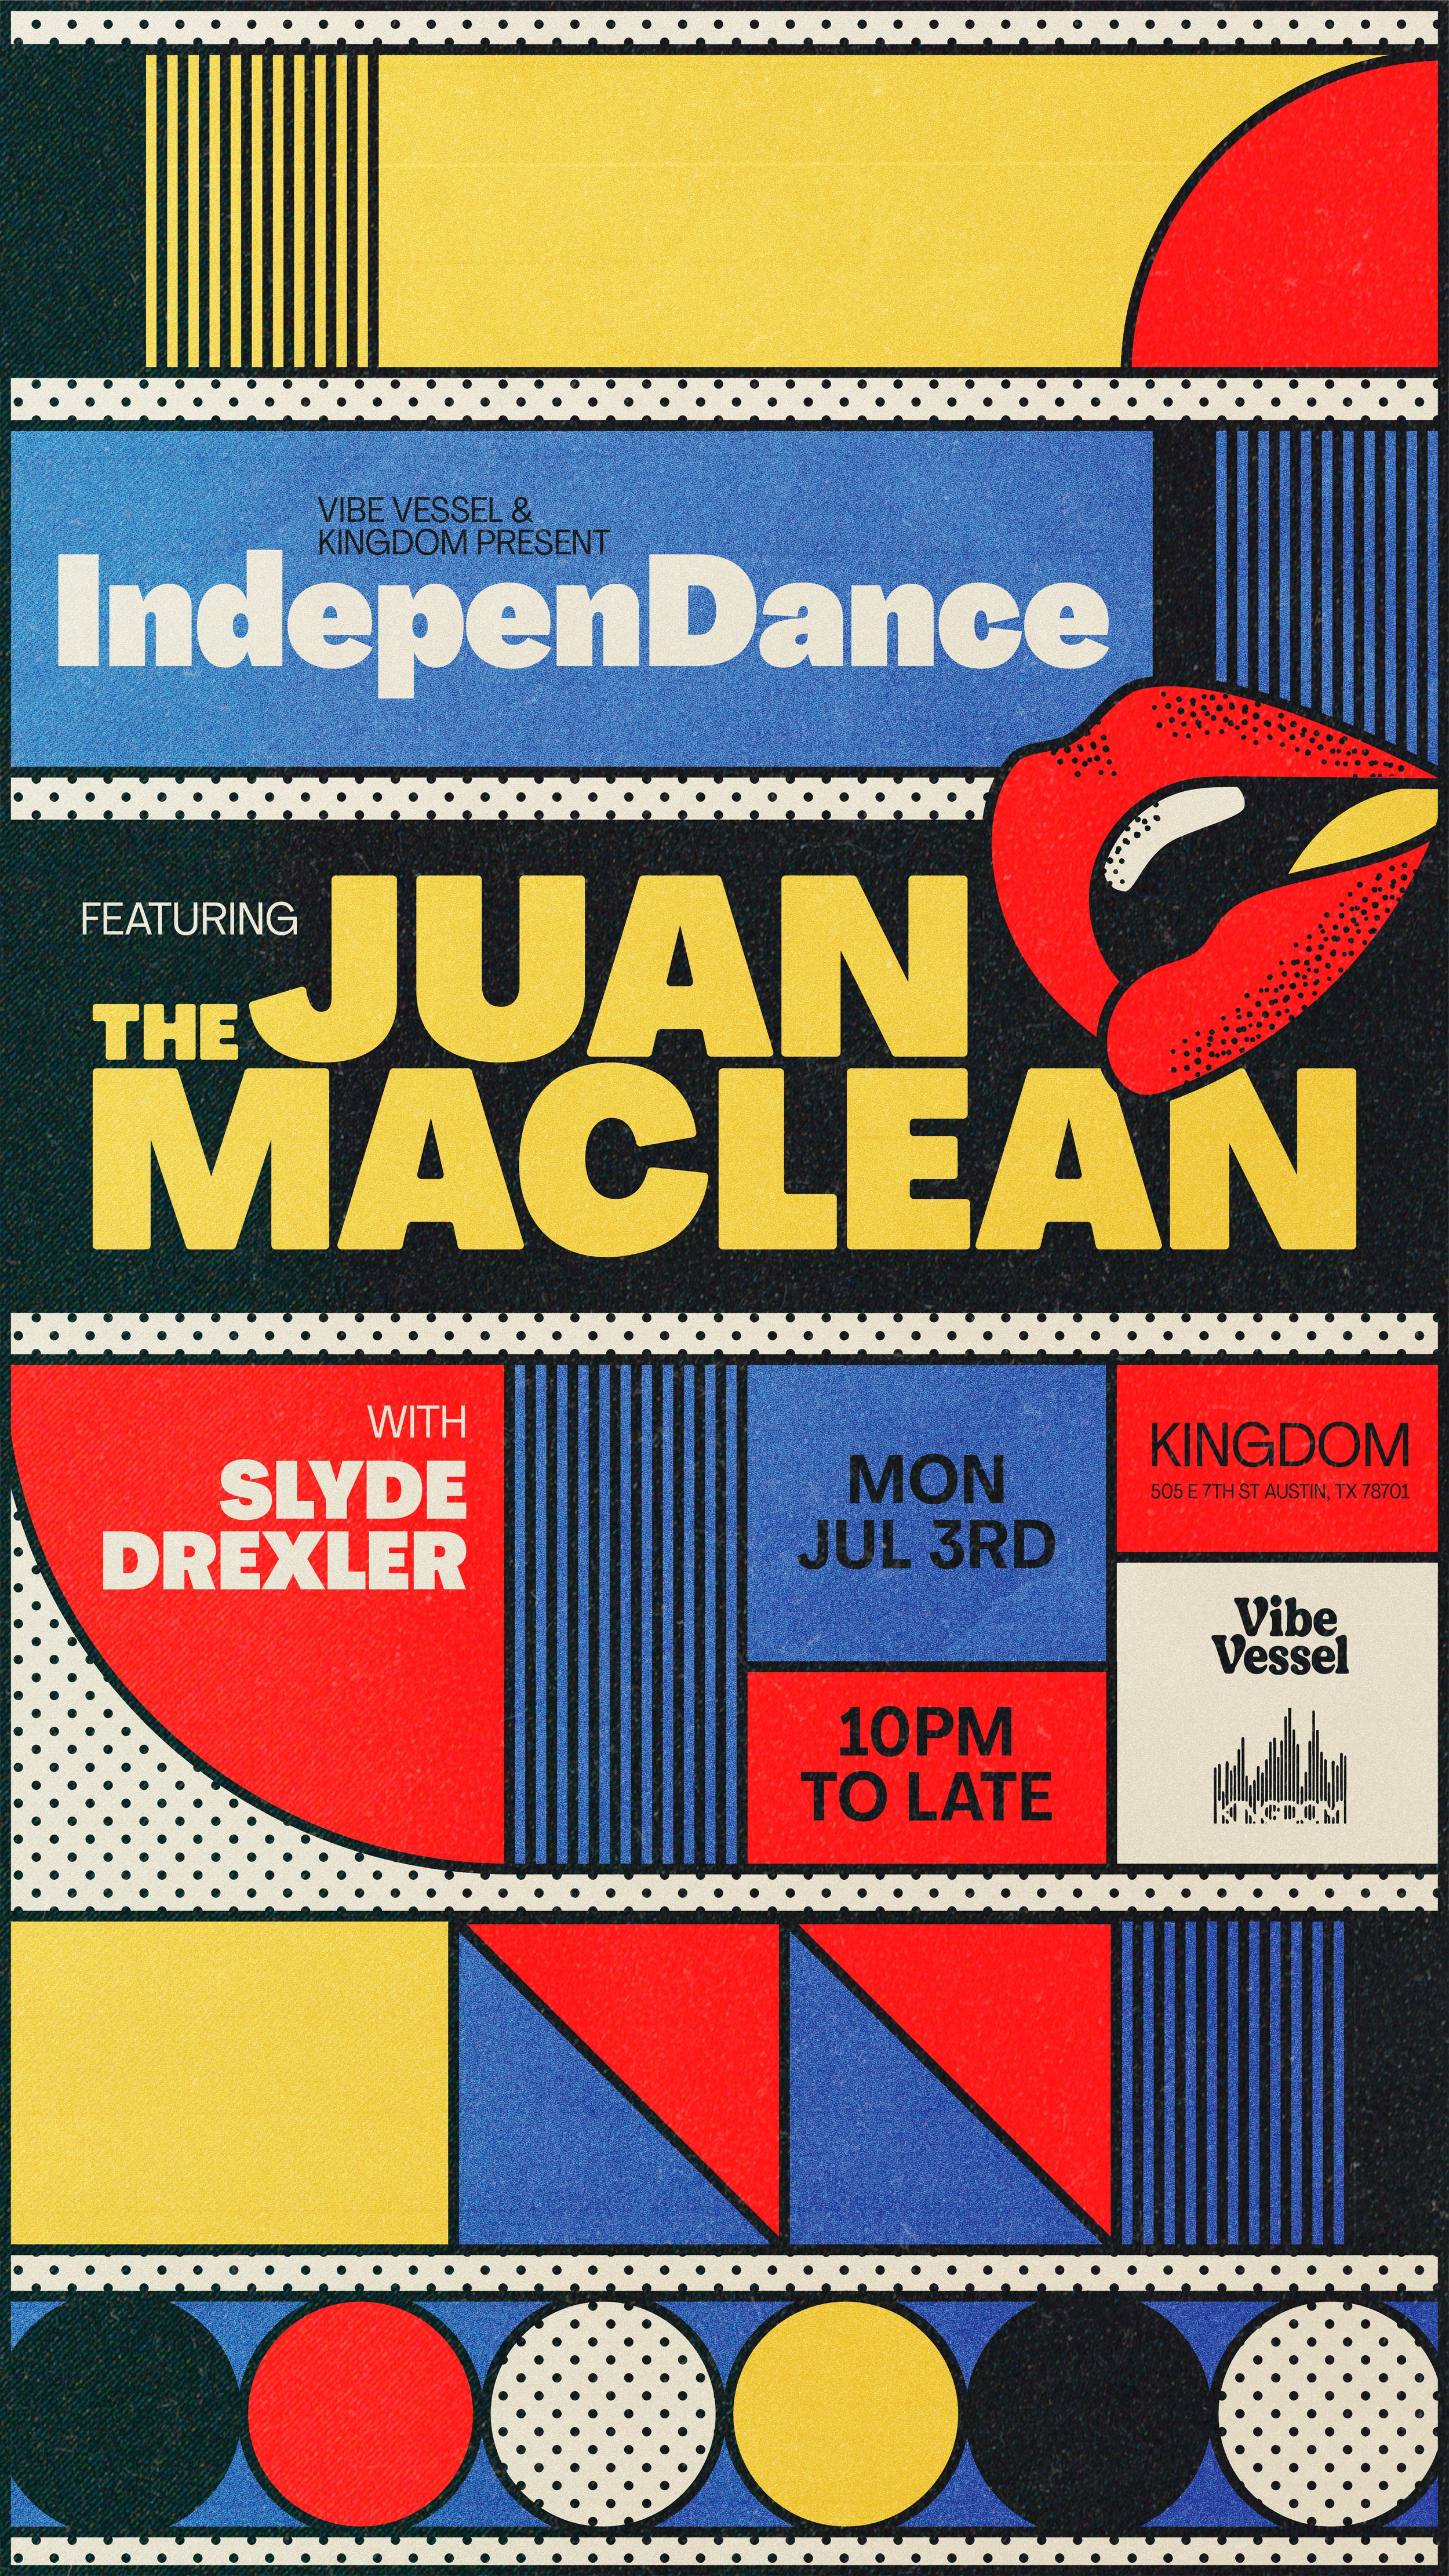 The Juan Maclean